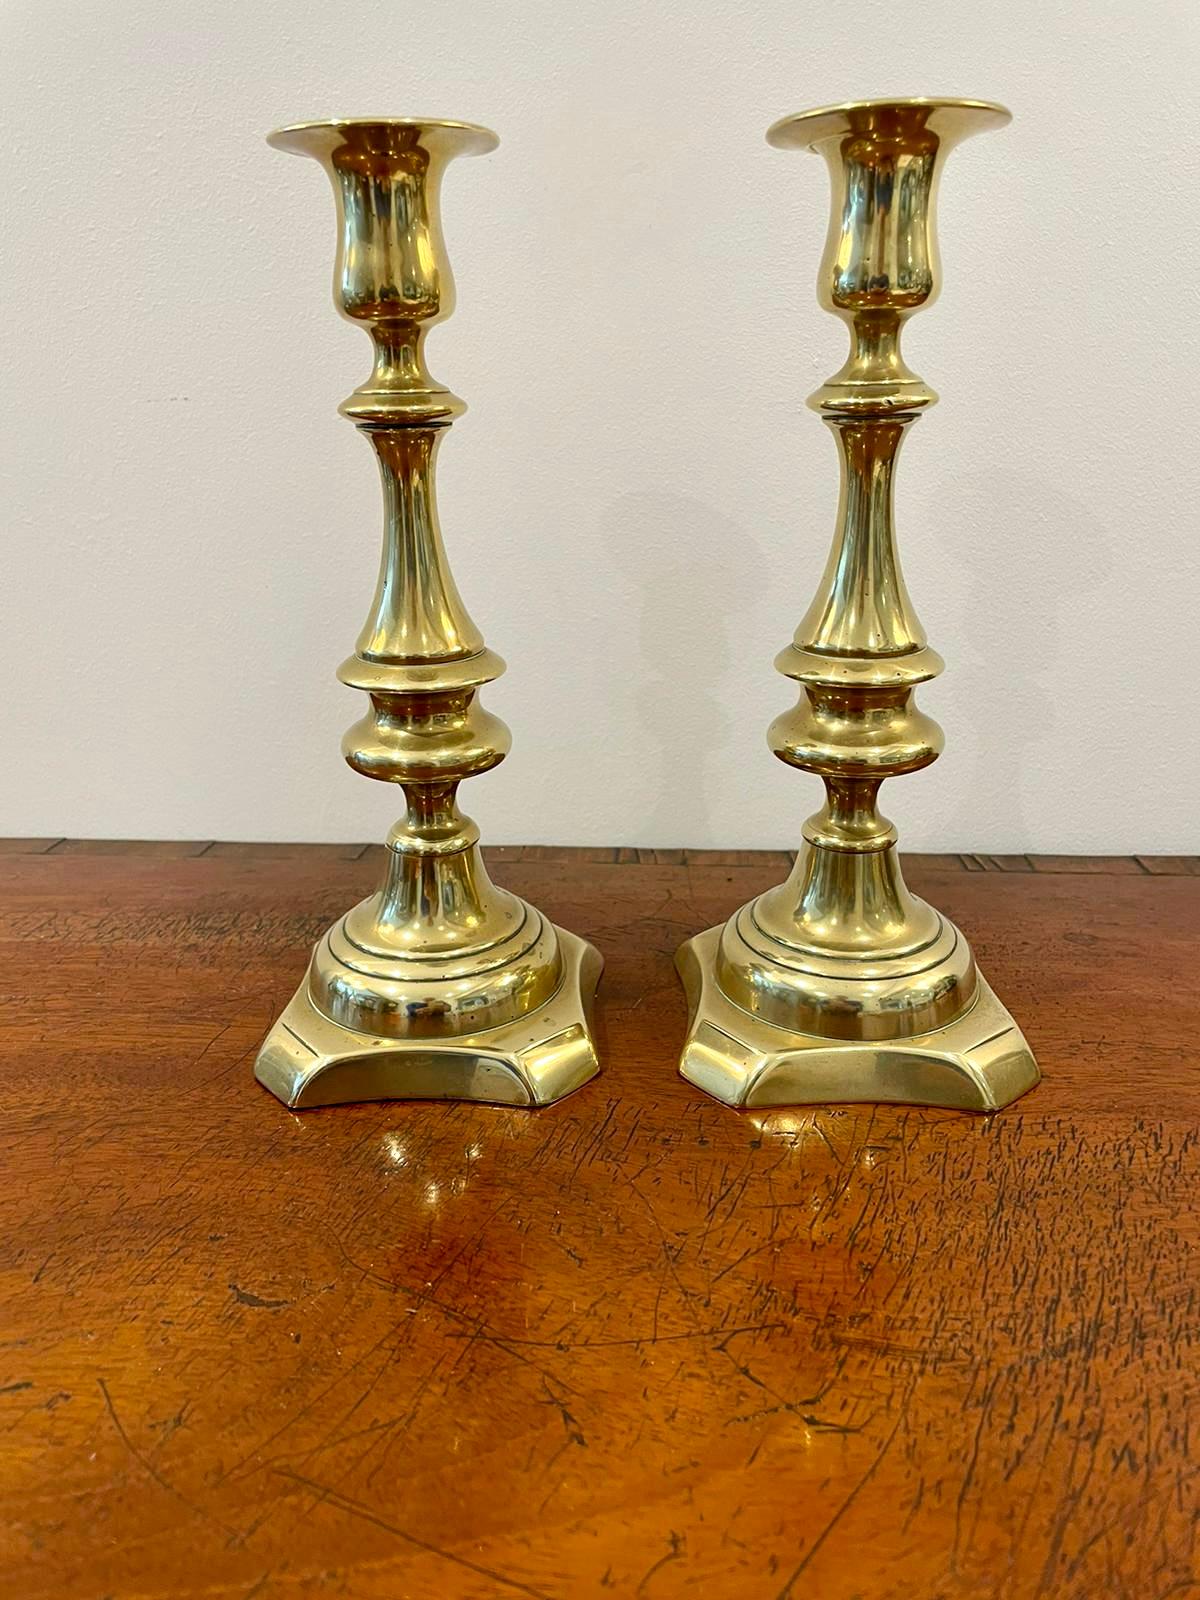 Ein Paar antiker viktorianischer Messing-Kerzenhalter mit kreisrunden Aufsätzen über einer gedrehten, geformten Säule, die auf einem abgestuften, geformten Sockel steht.

Maße: 23 x 9 x 9,5 cm.
Datum 1860.
 